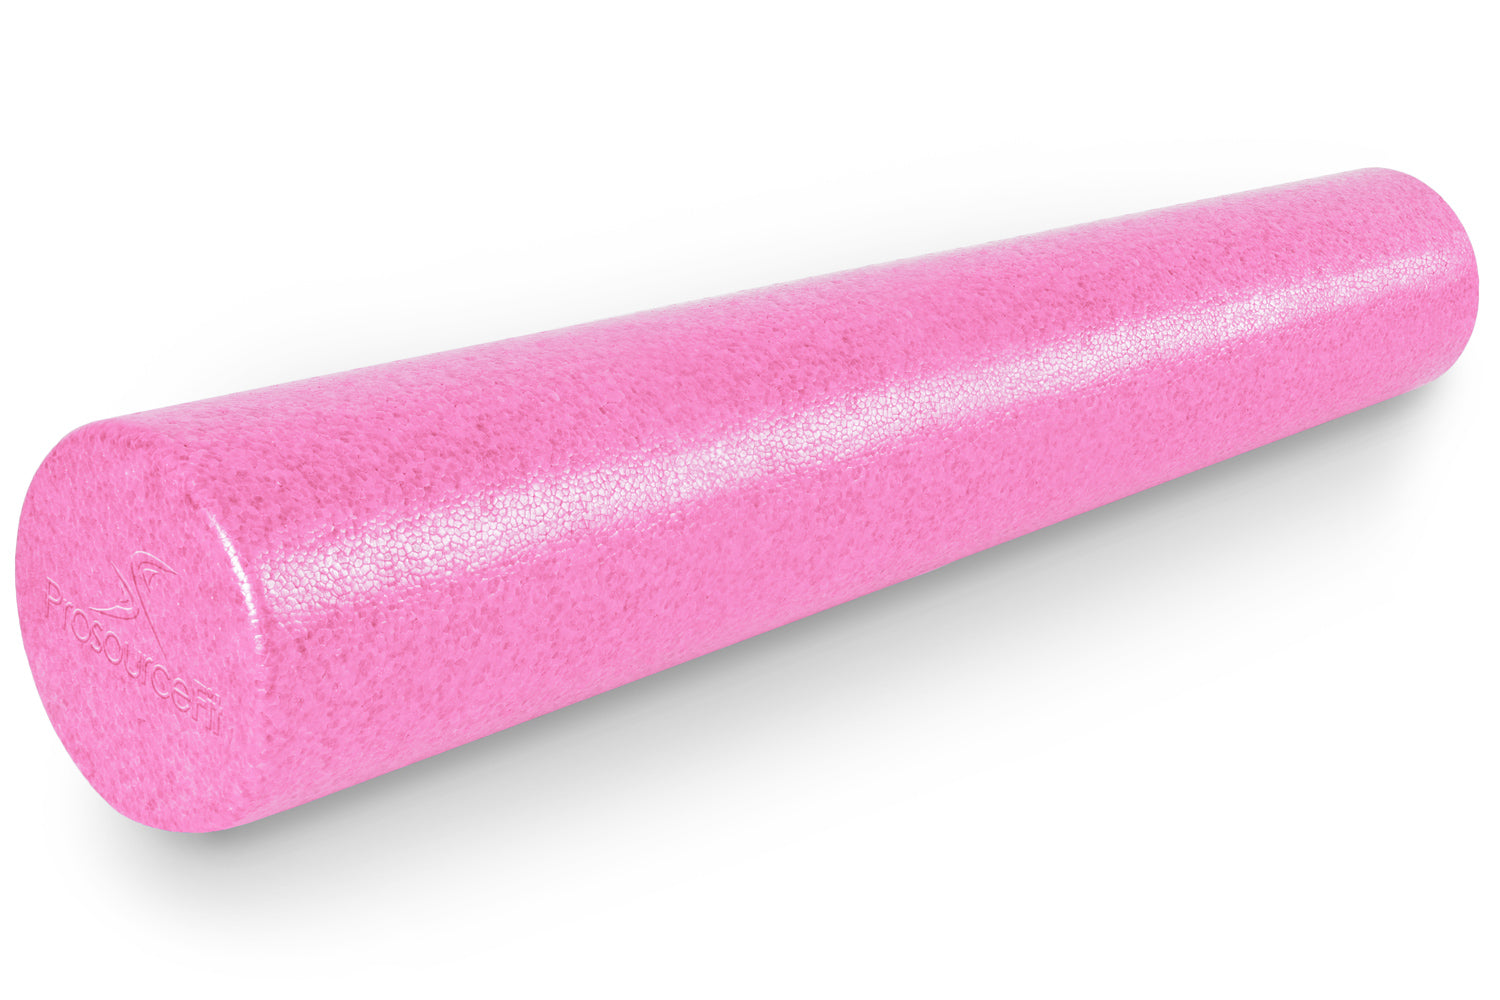 36 x 6 Pink High Density Foam Roller